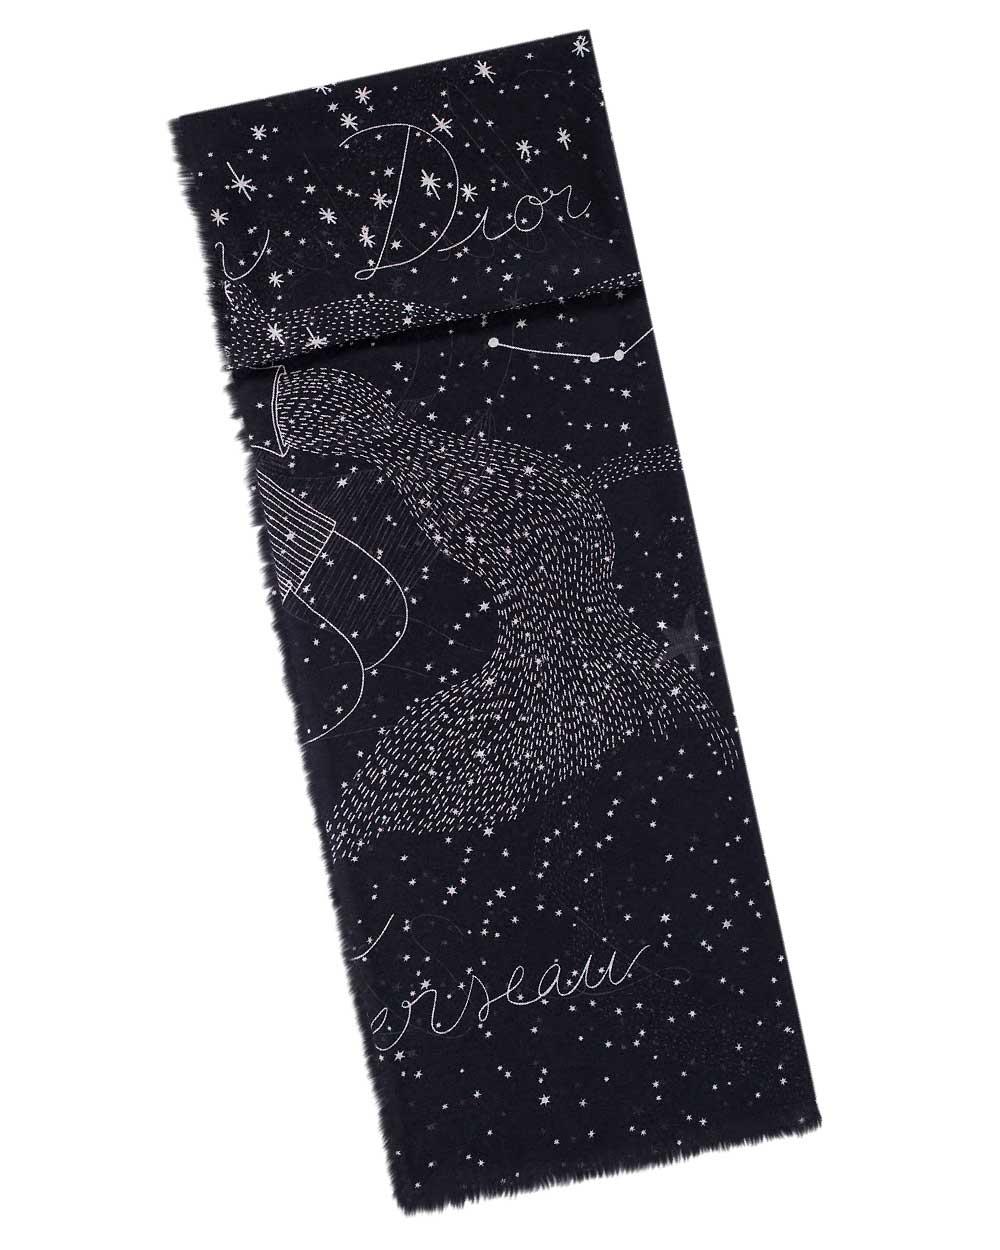 Christian Dior scarf, $910